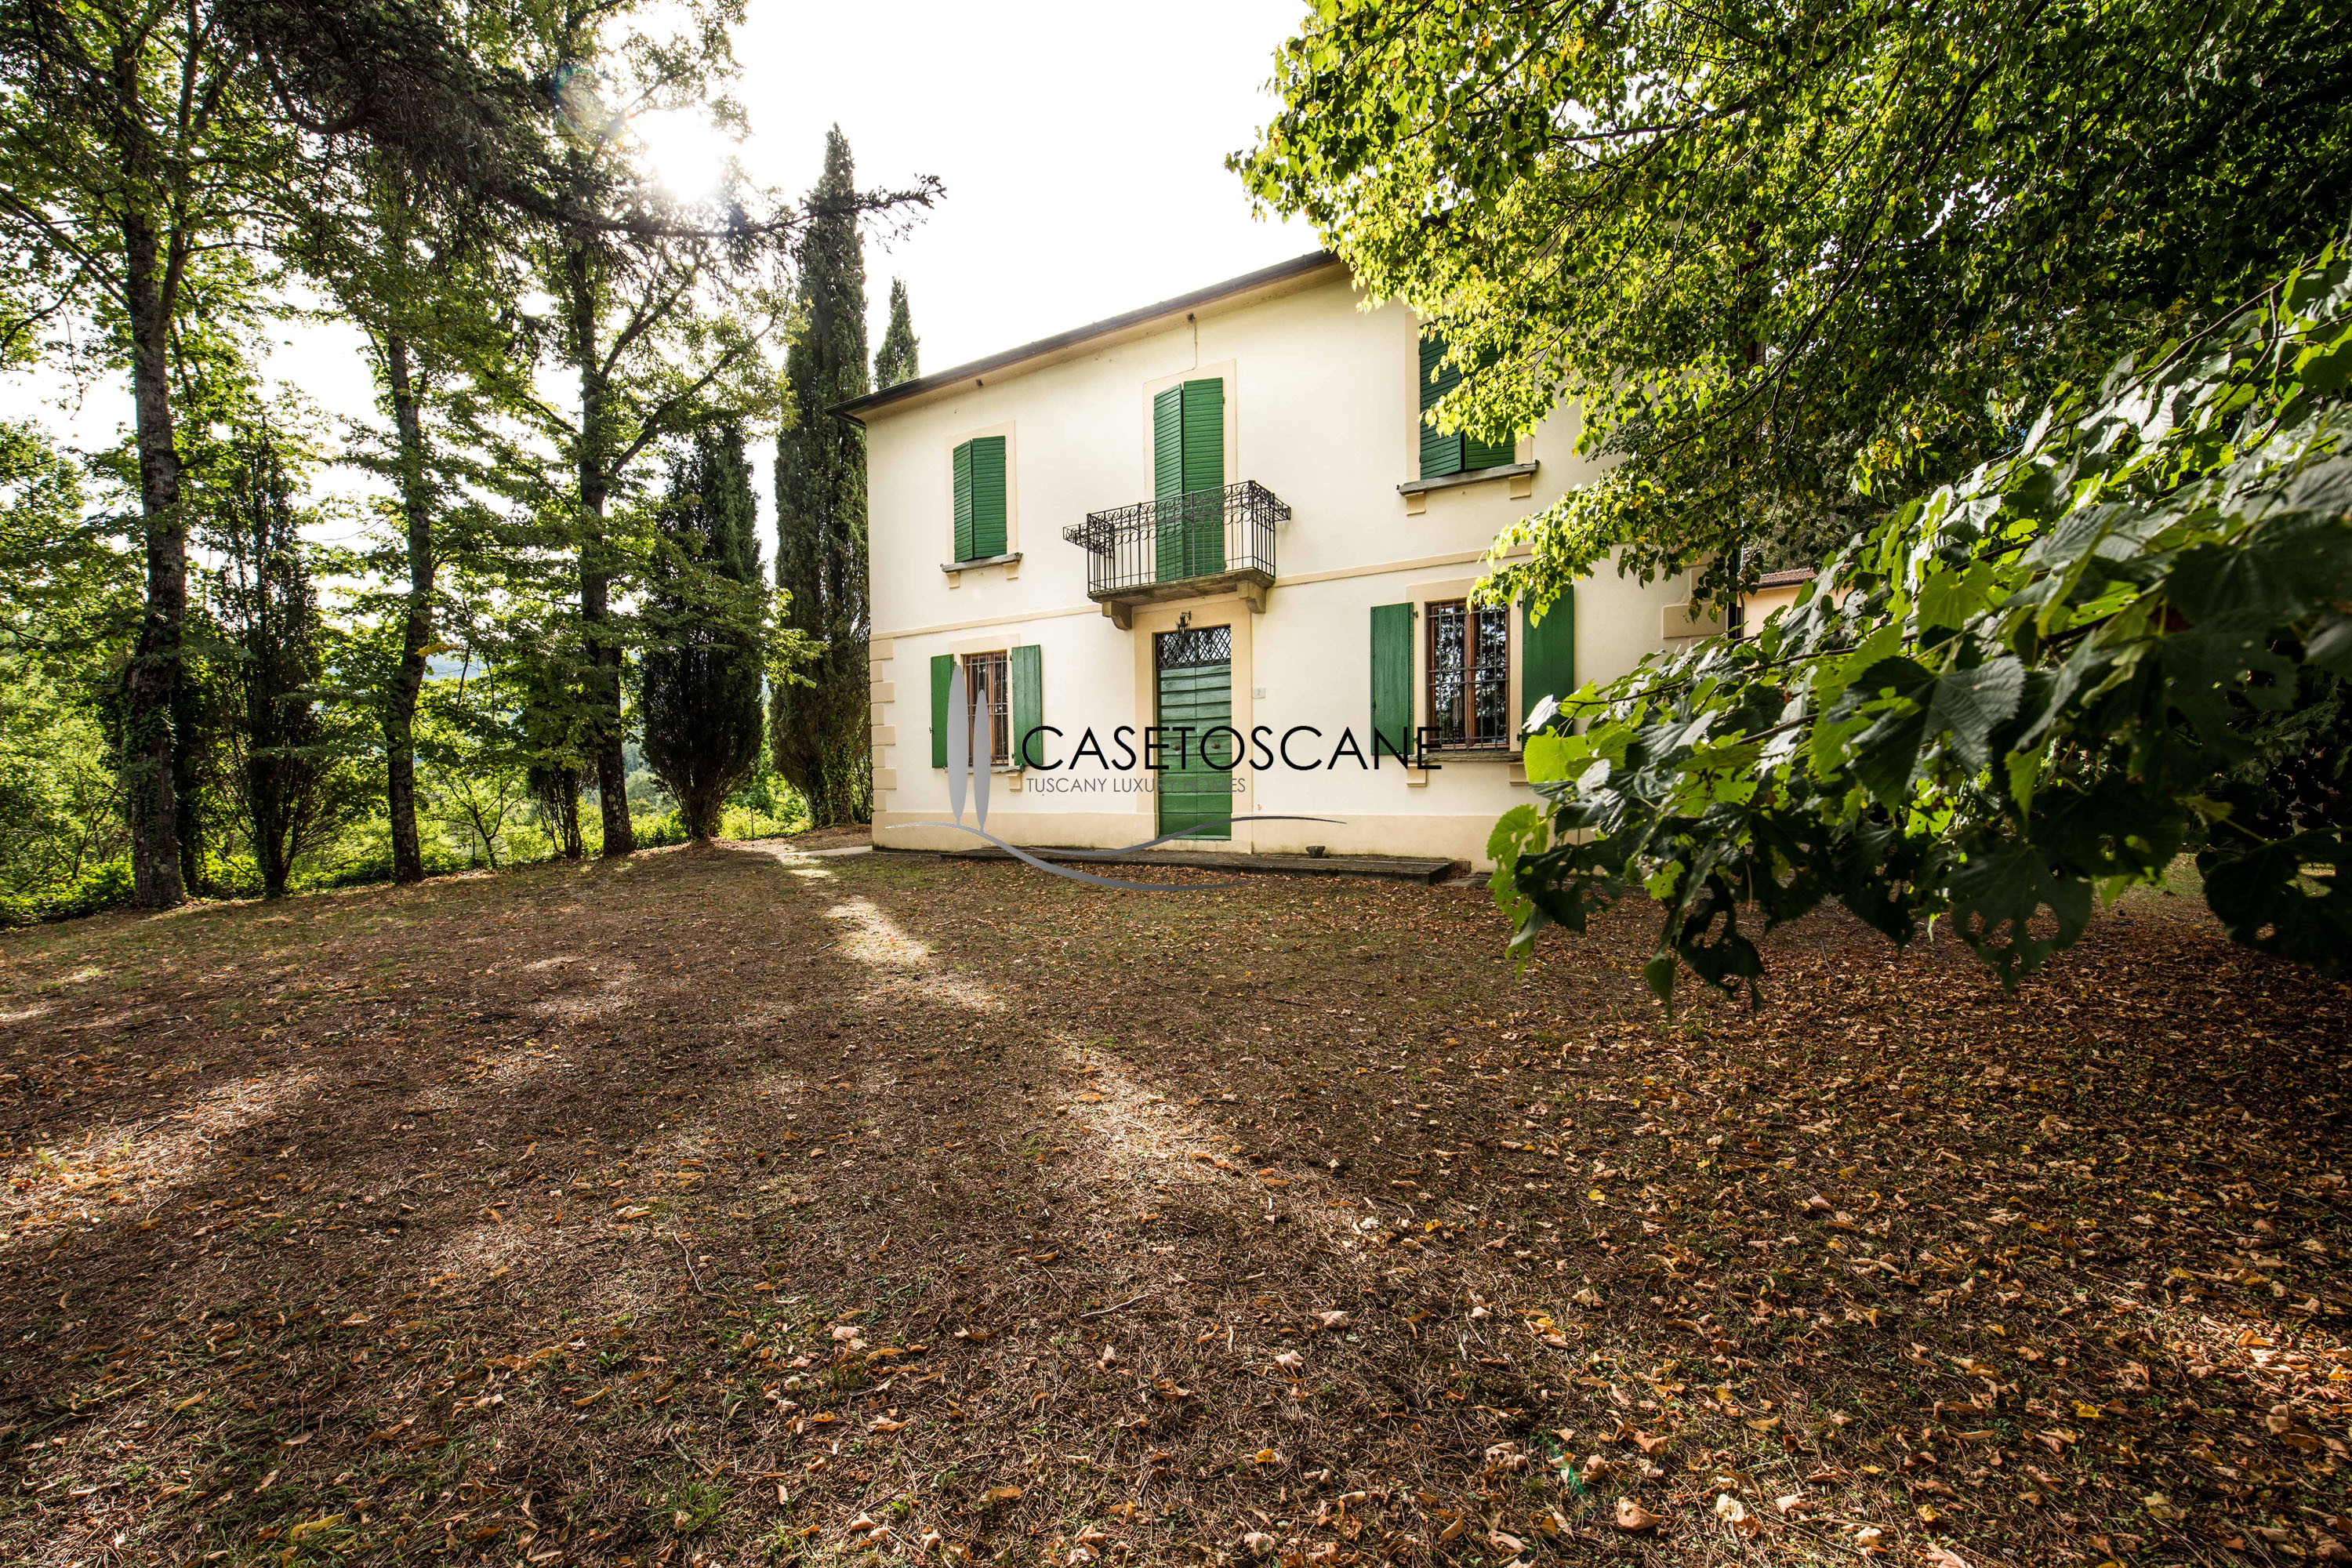 S196 - Villa signorile degli anni '30 con dependance per mq.510 totali e terreno circostante di ha.9 nelle colline di Arezzo.